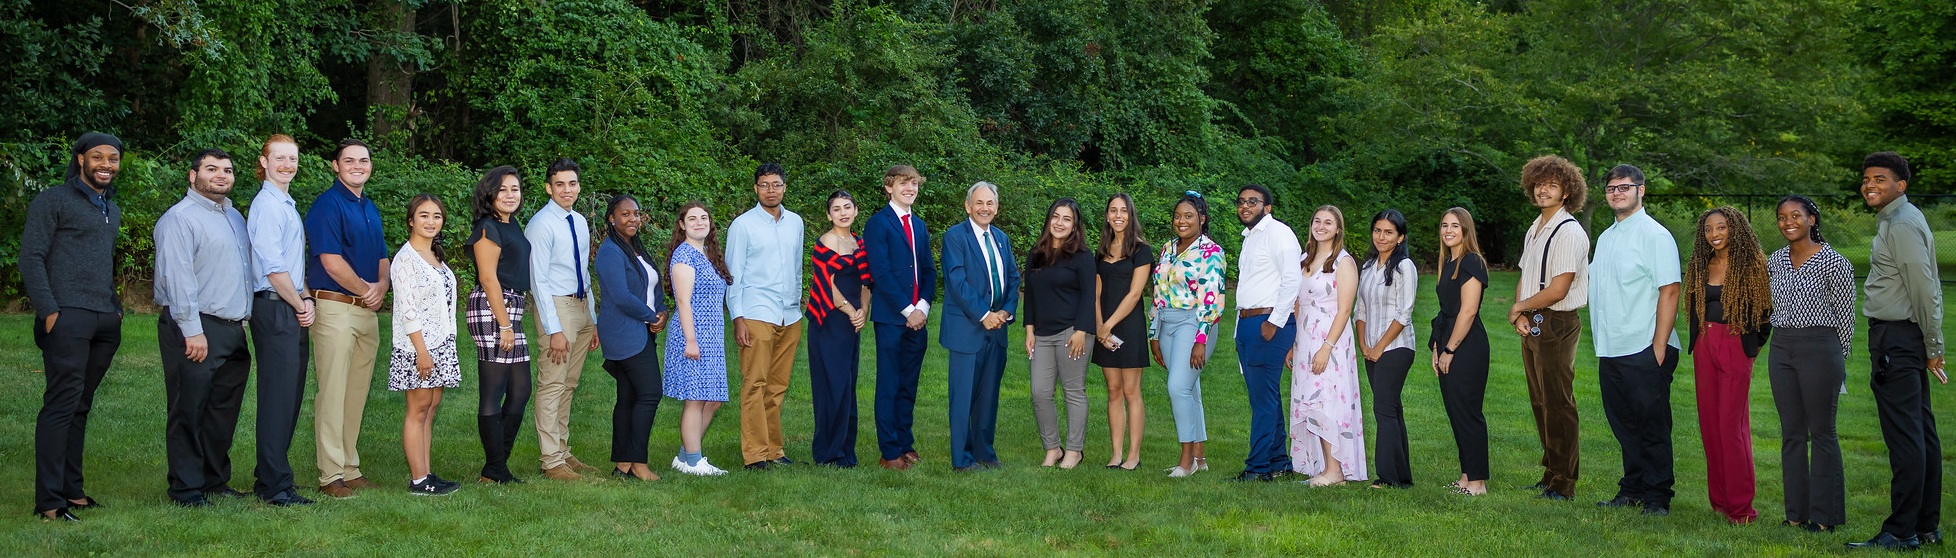 President's Circle Students & Dr. Nader